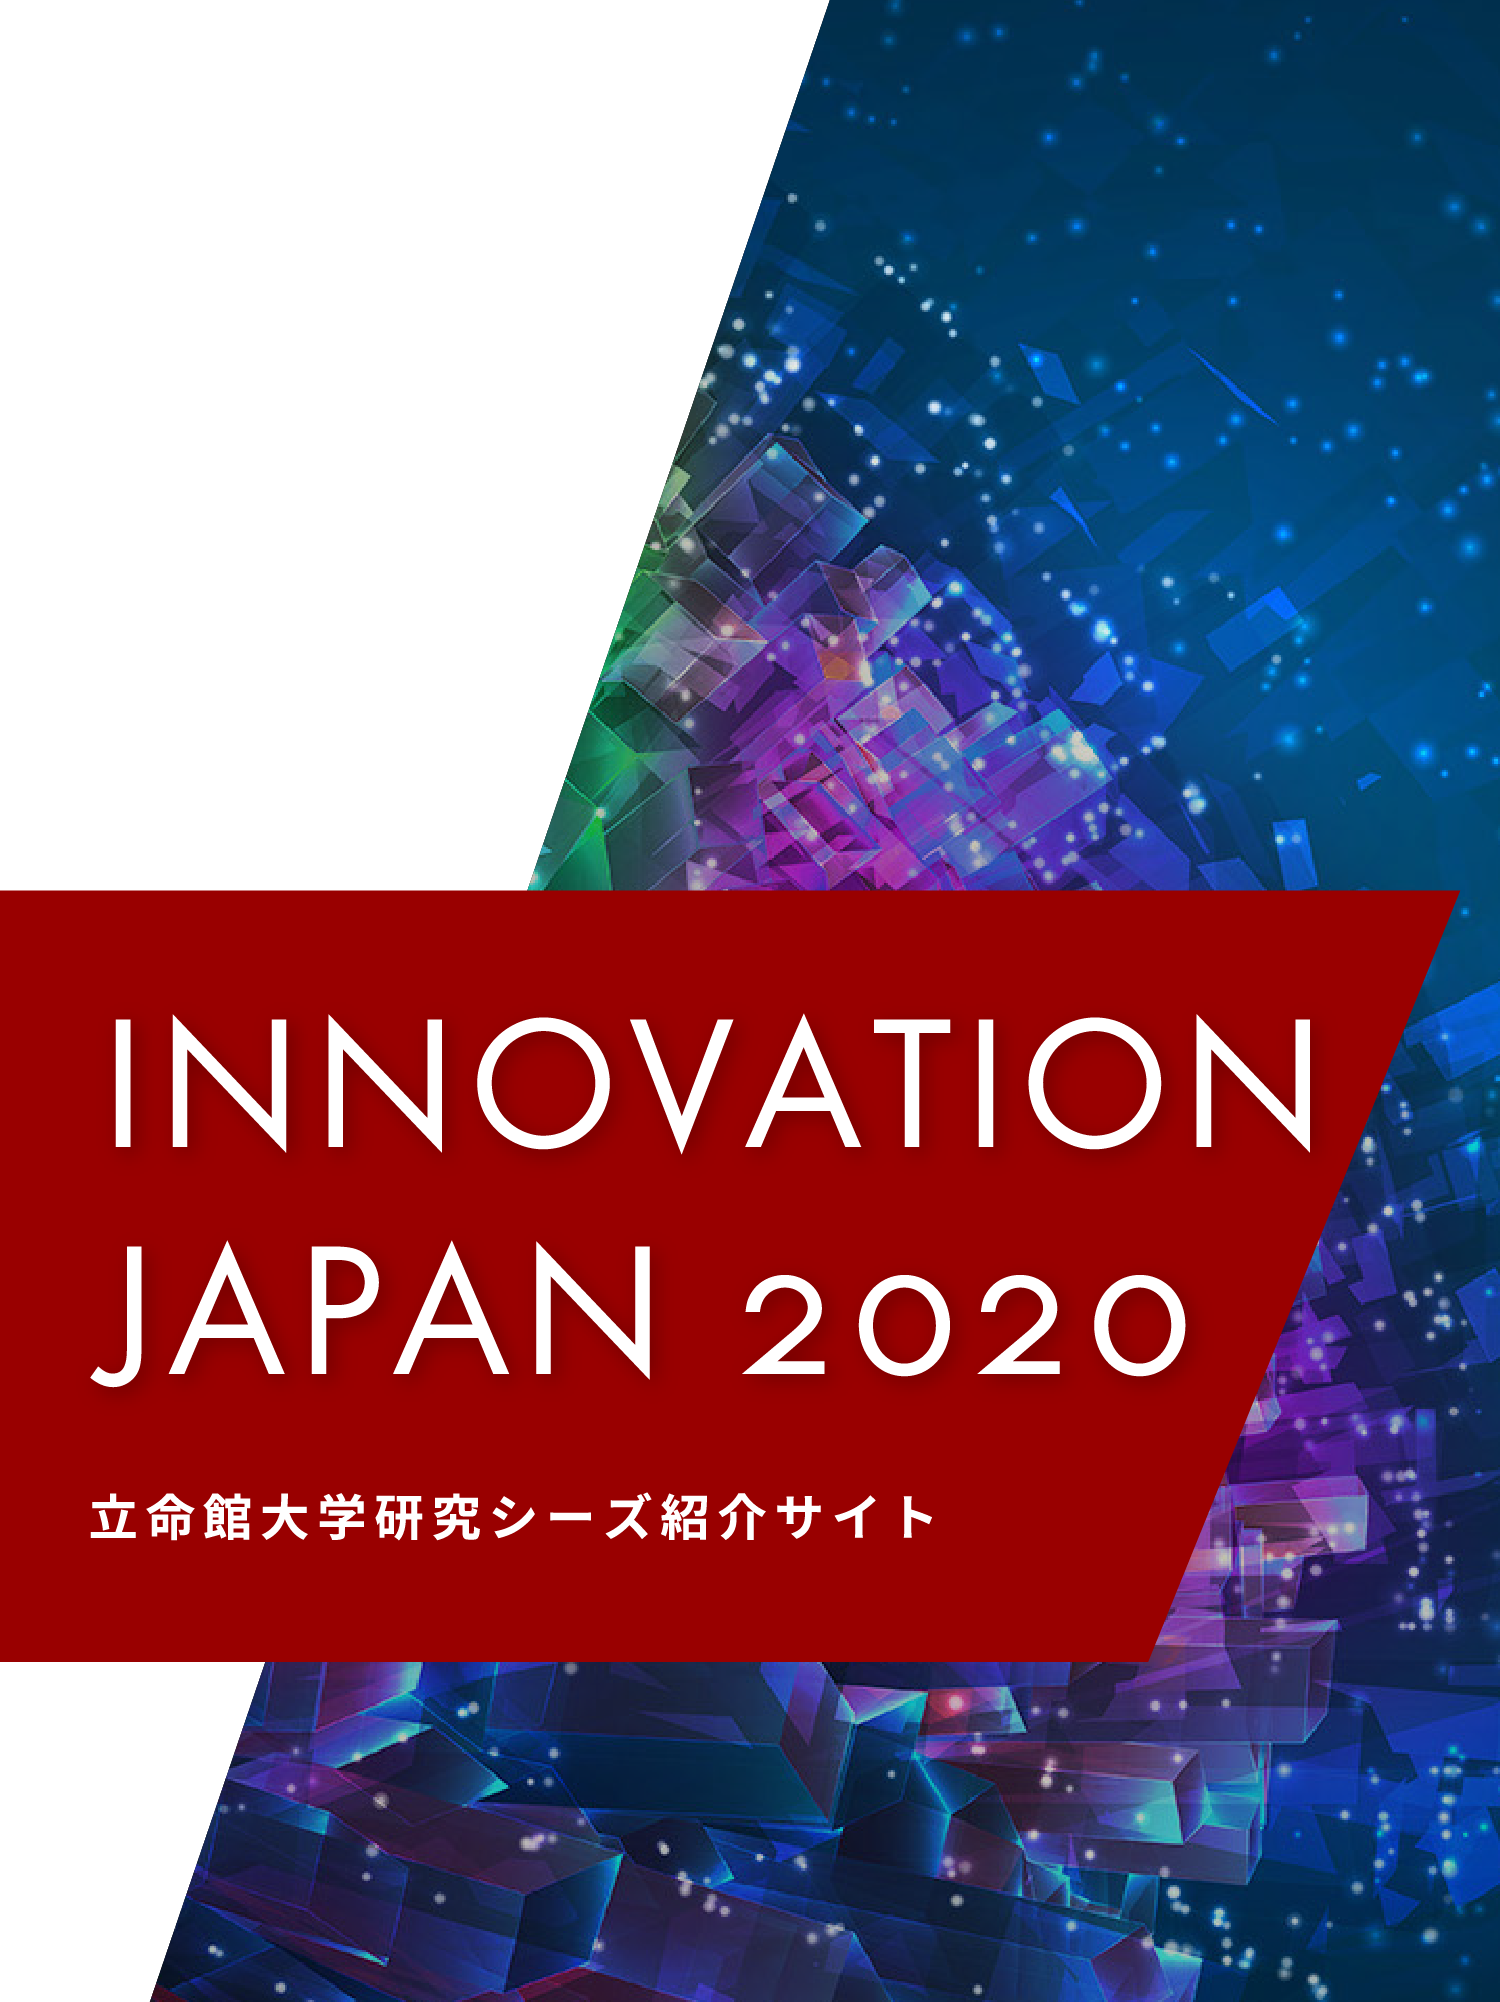 INNOVATION JAPAN 2020